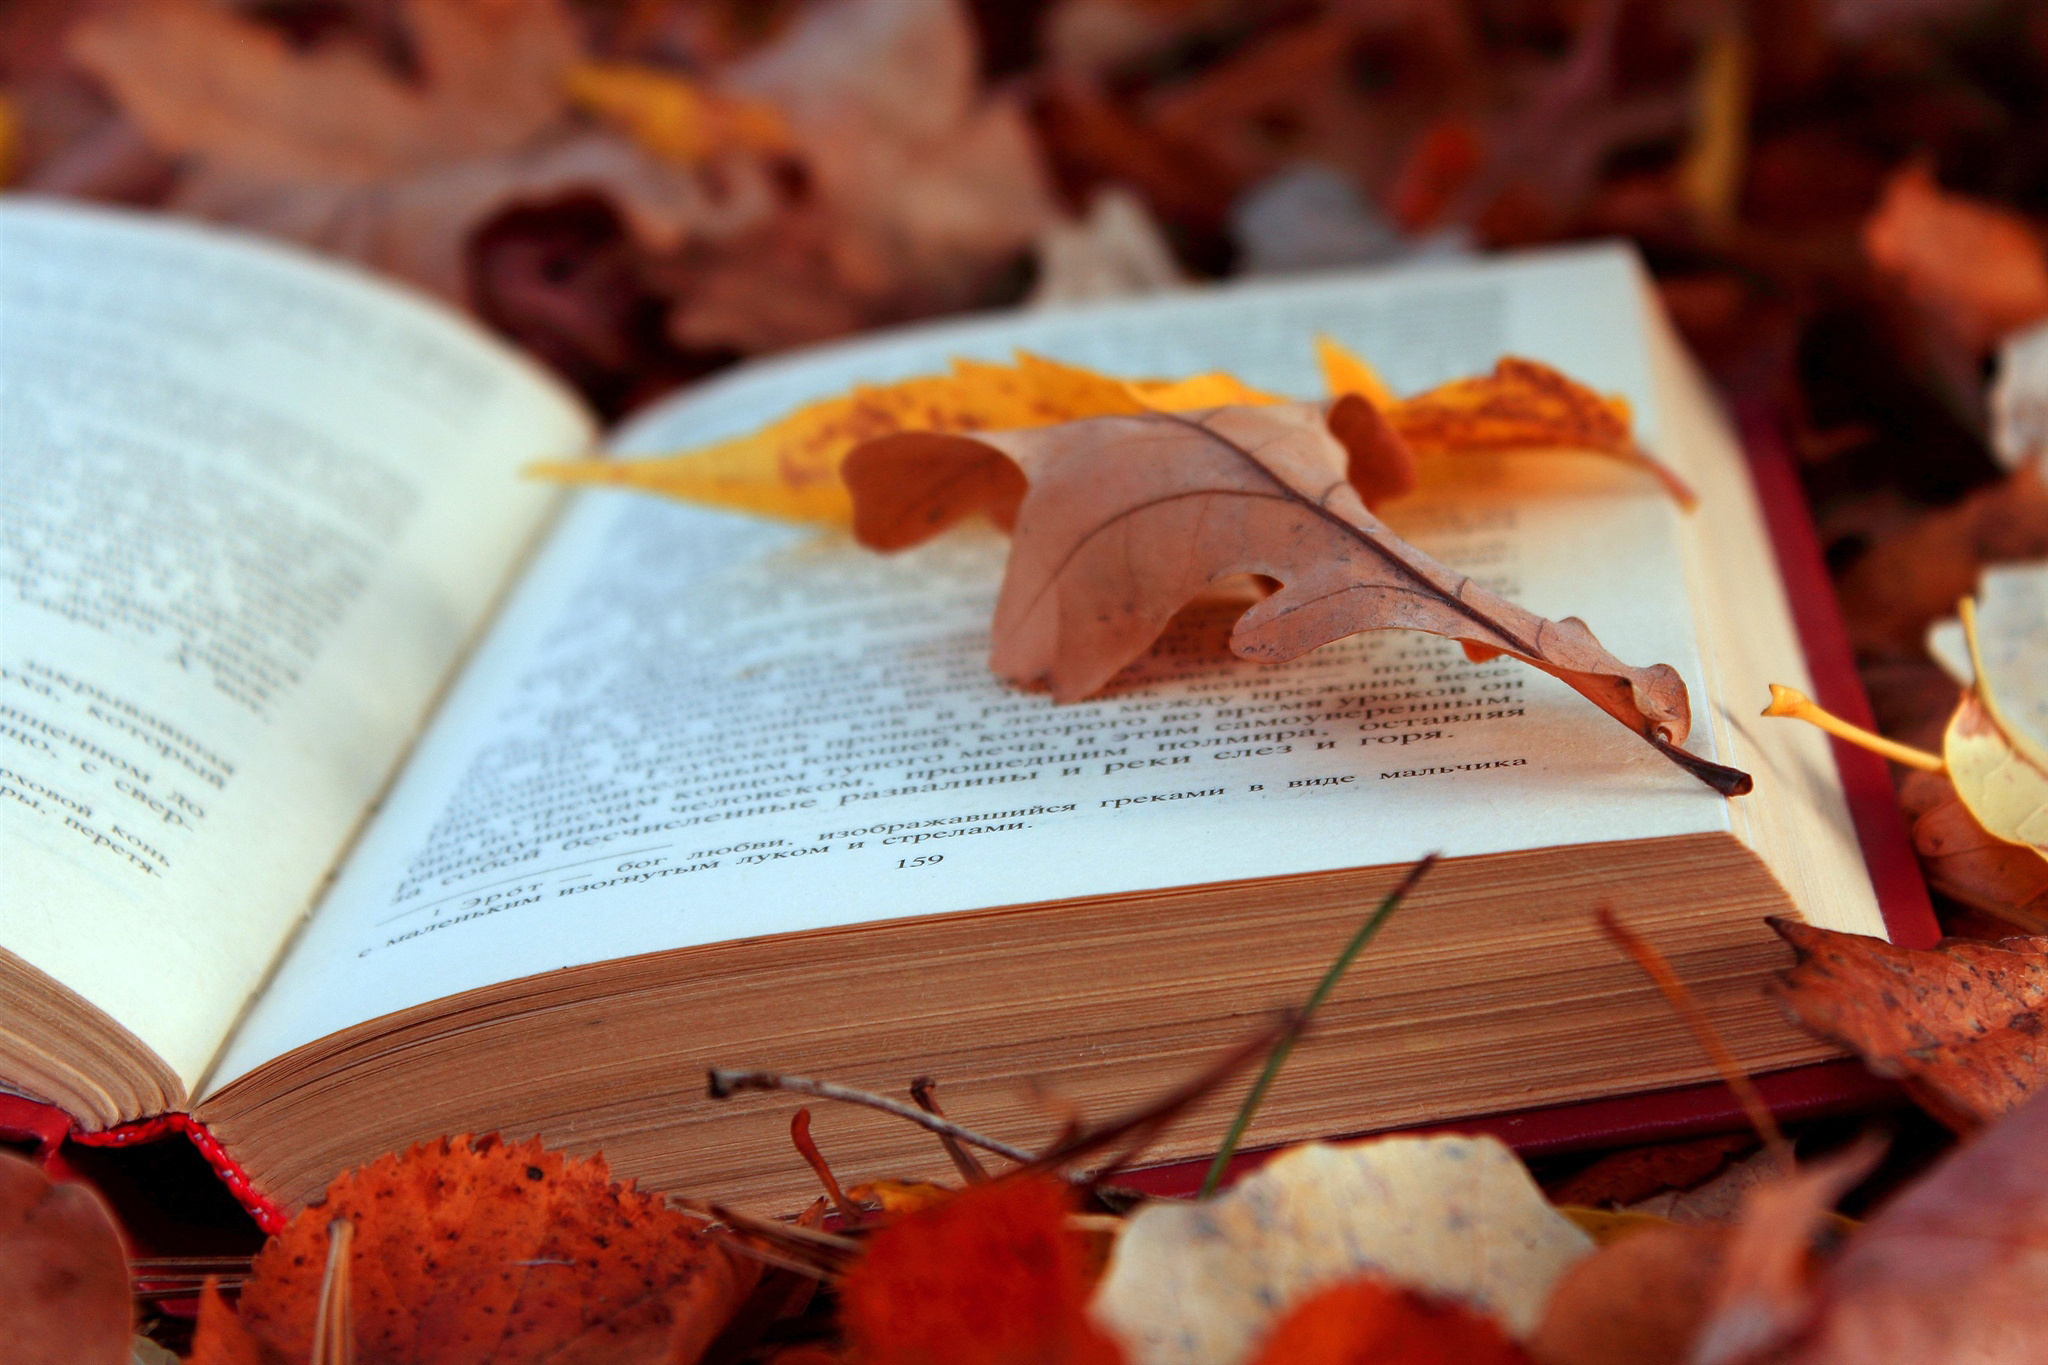 fall, nature, mood, season, leaf, man made, book